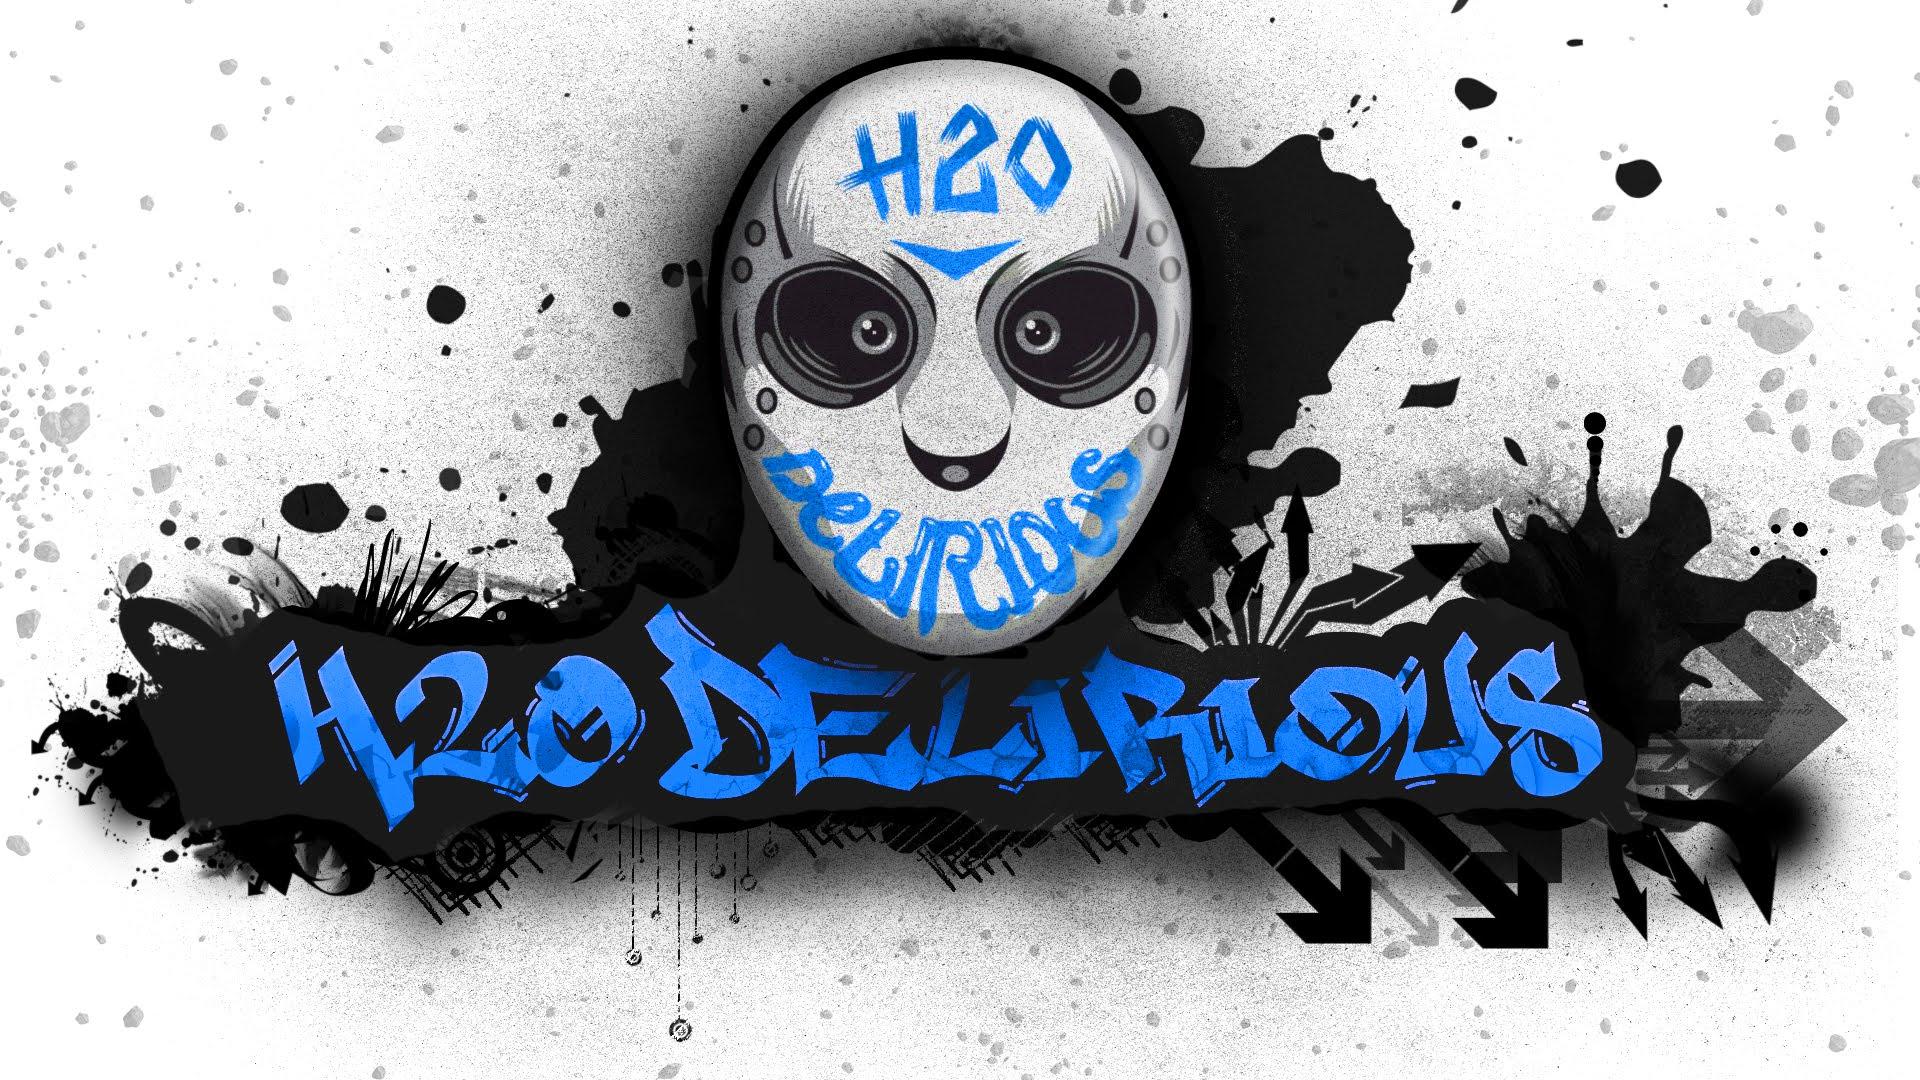 Desktop H2O Delirious Wallpaper